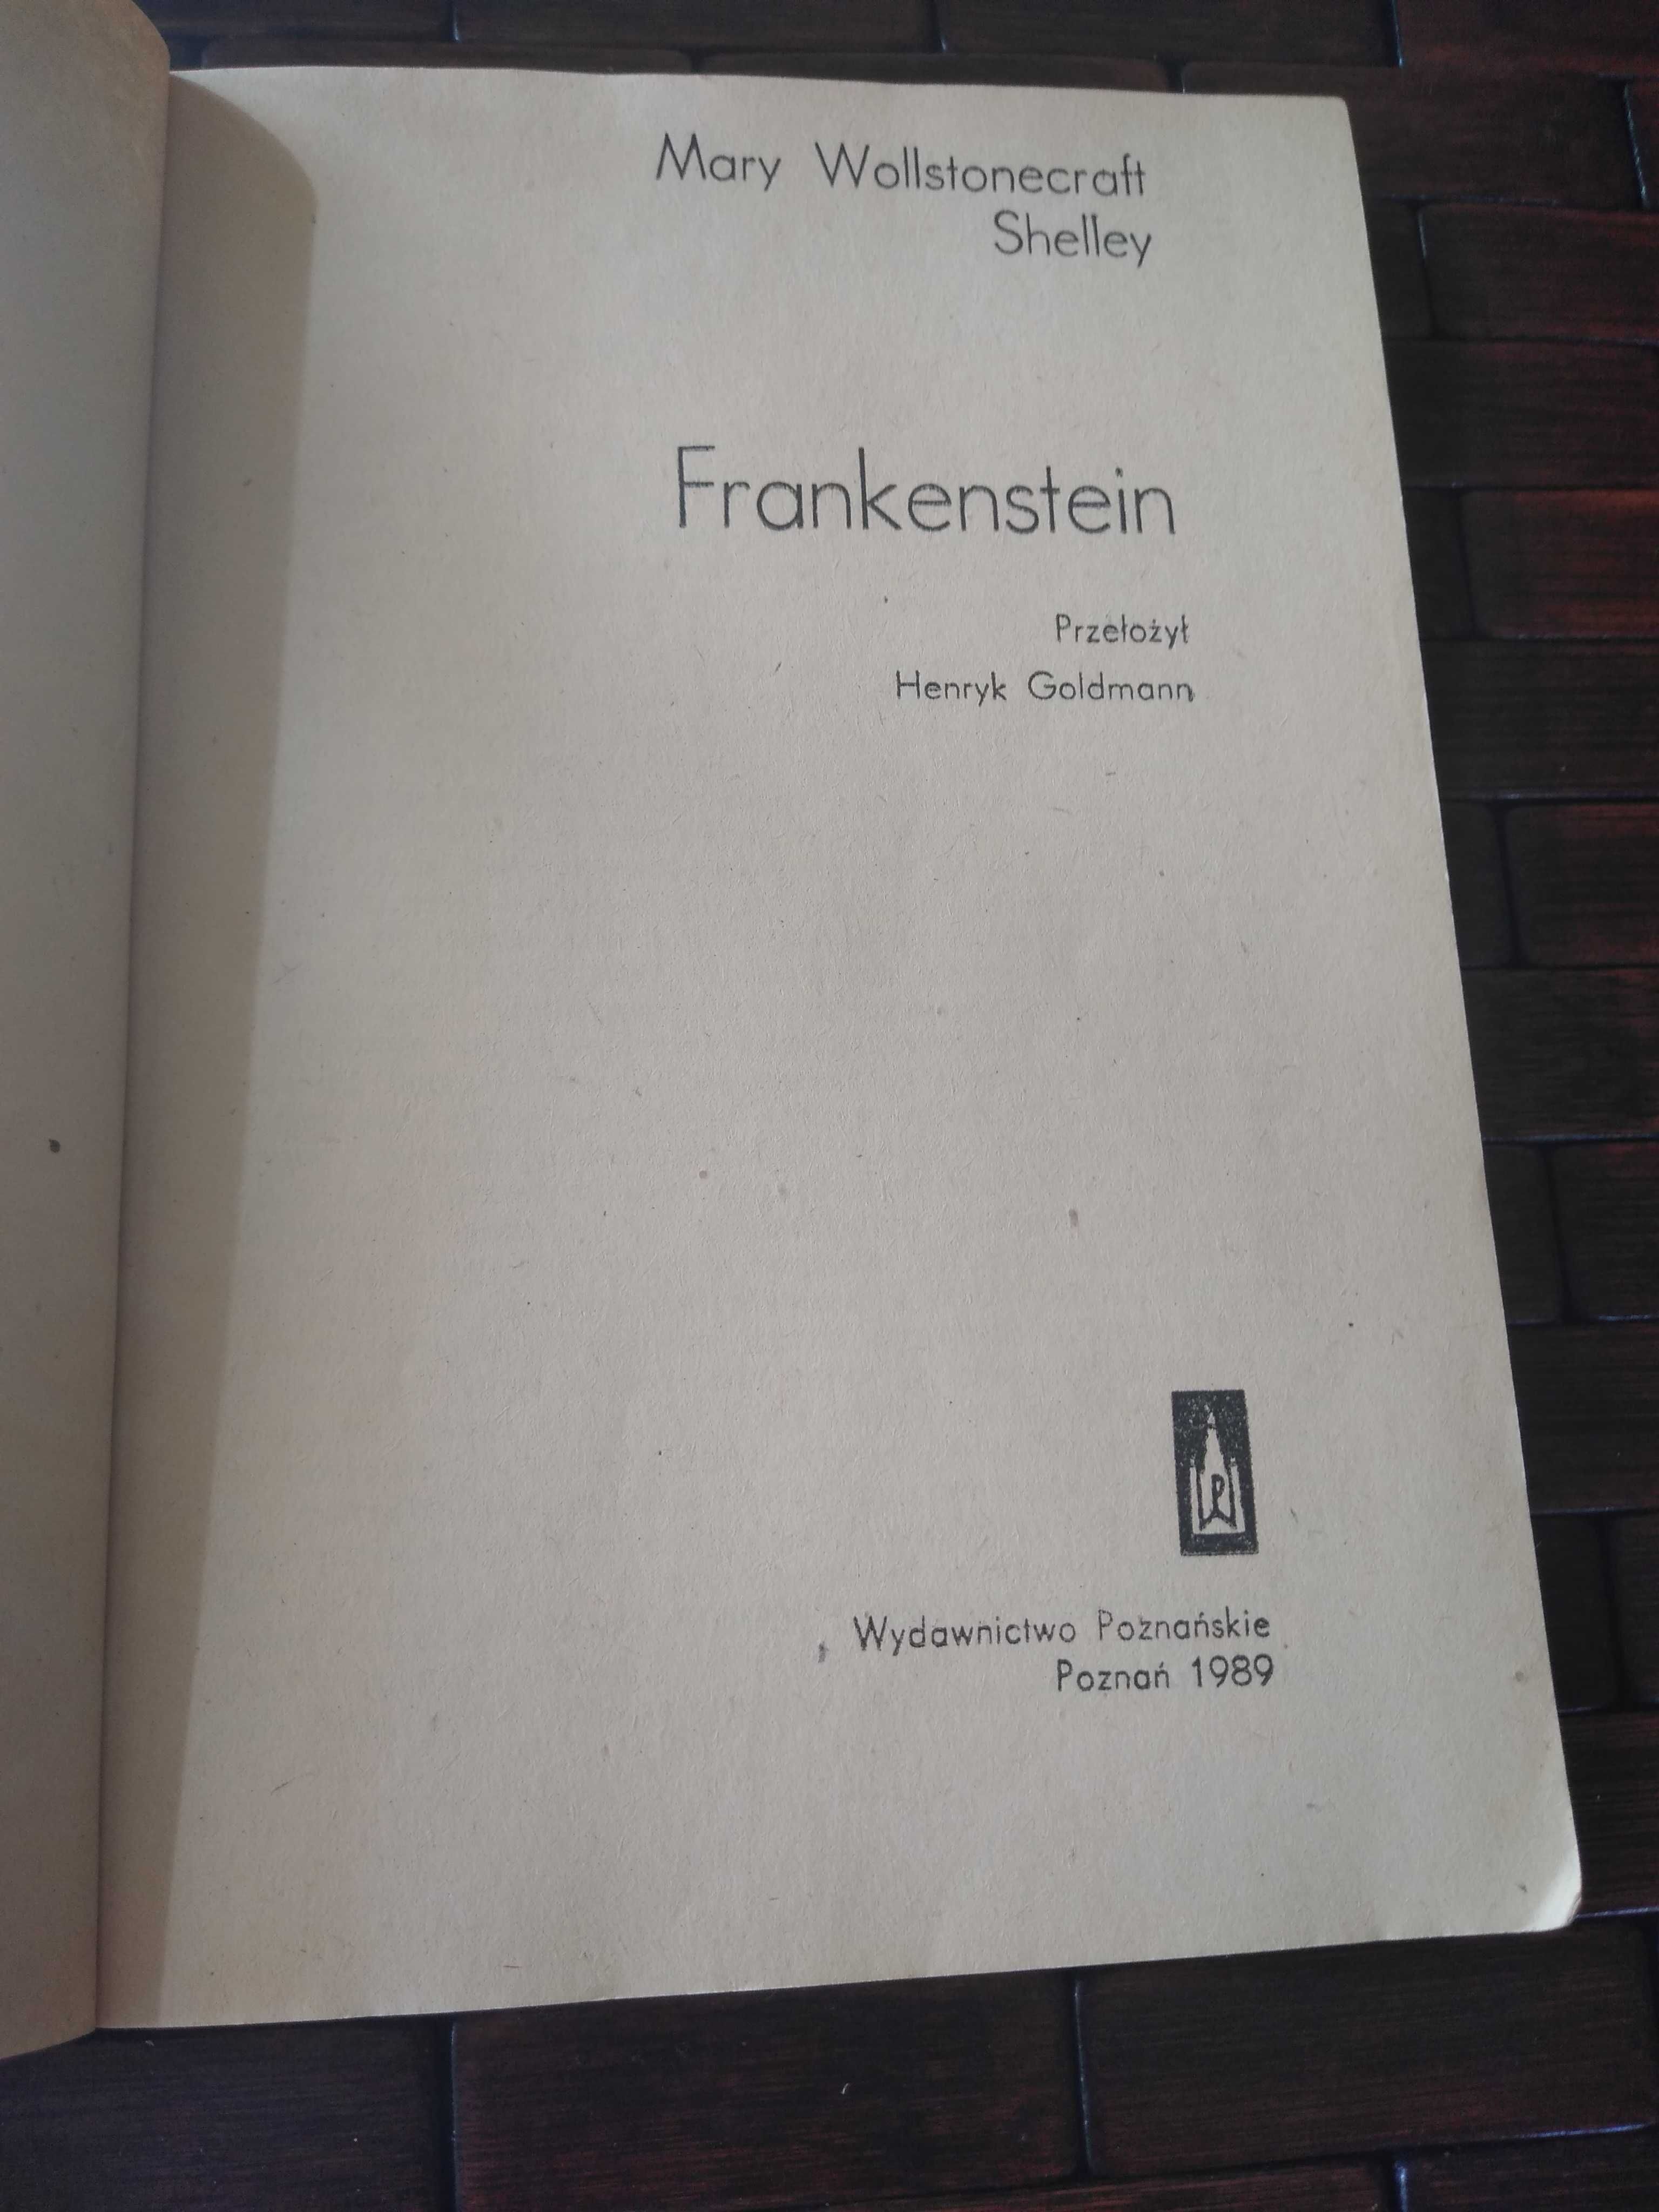 Mary Wollstonecraft shelley Frankenstein